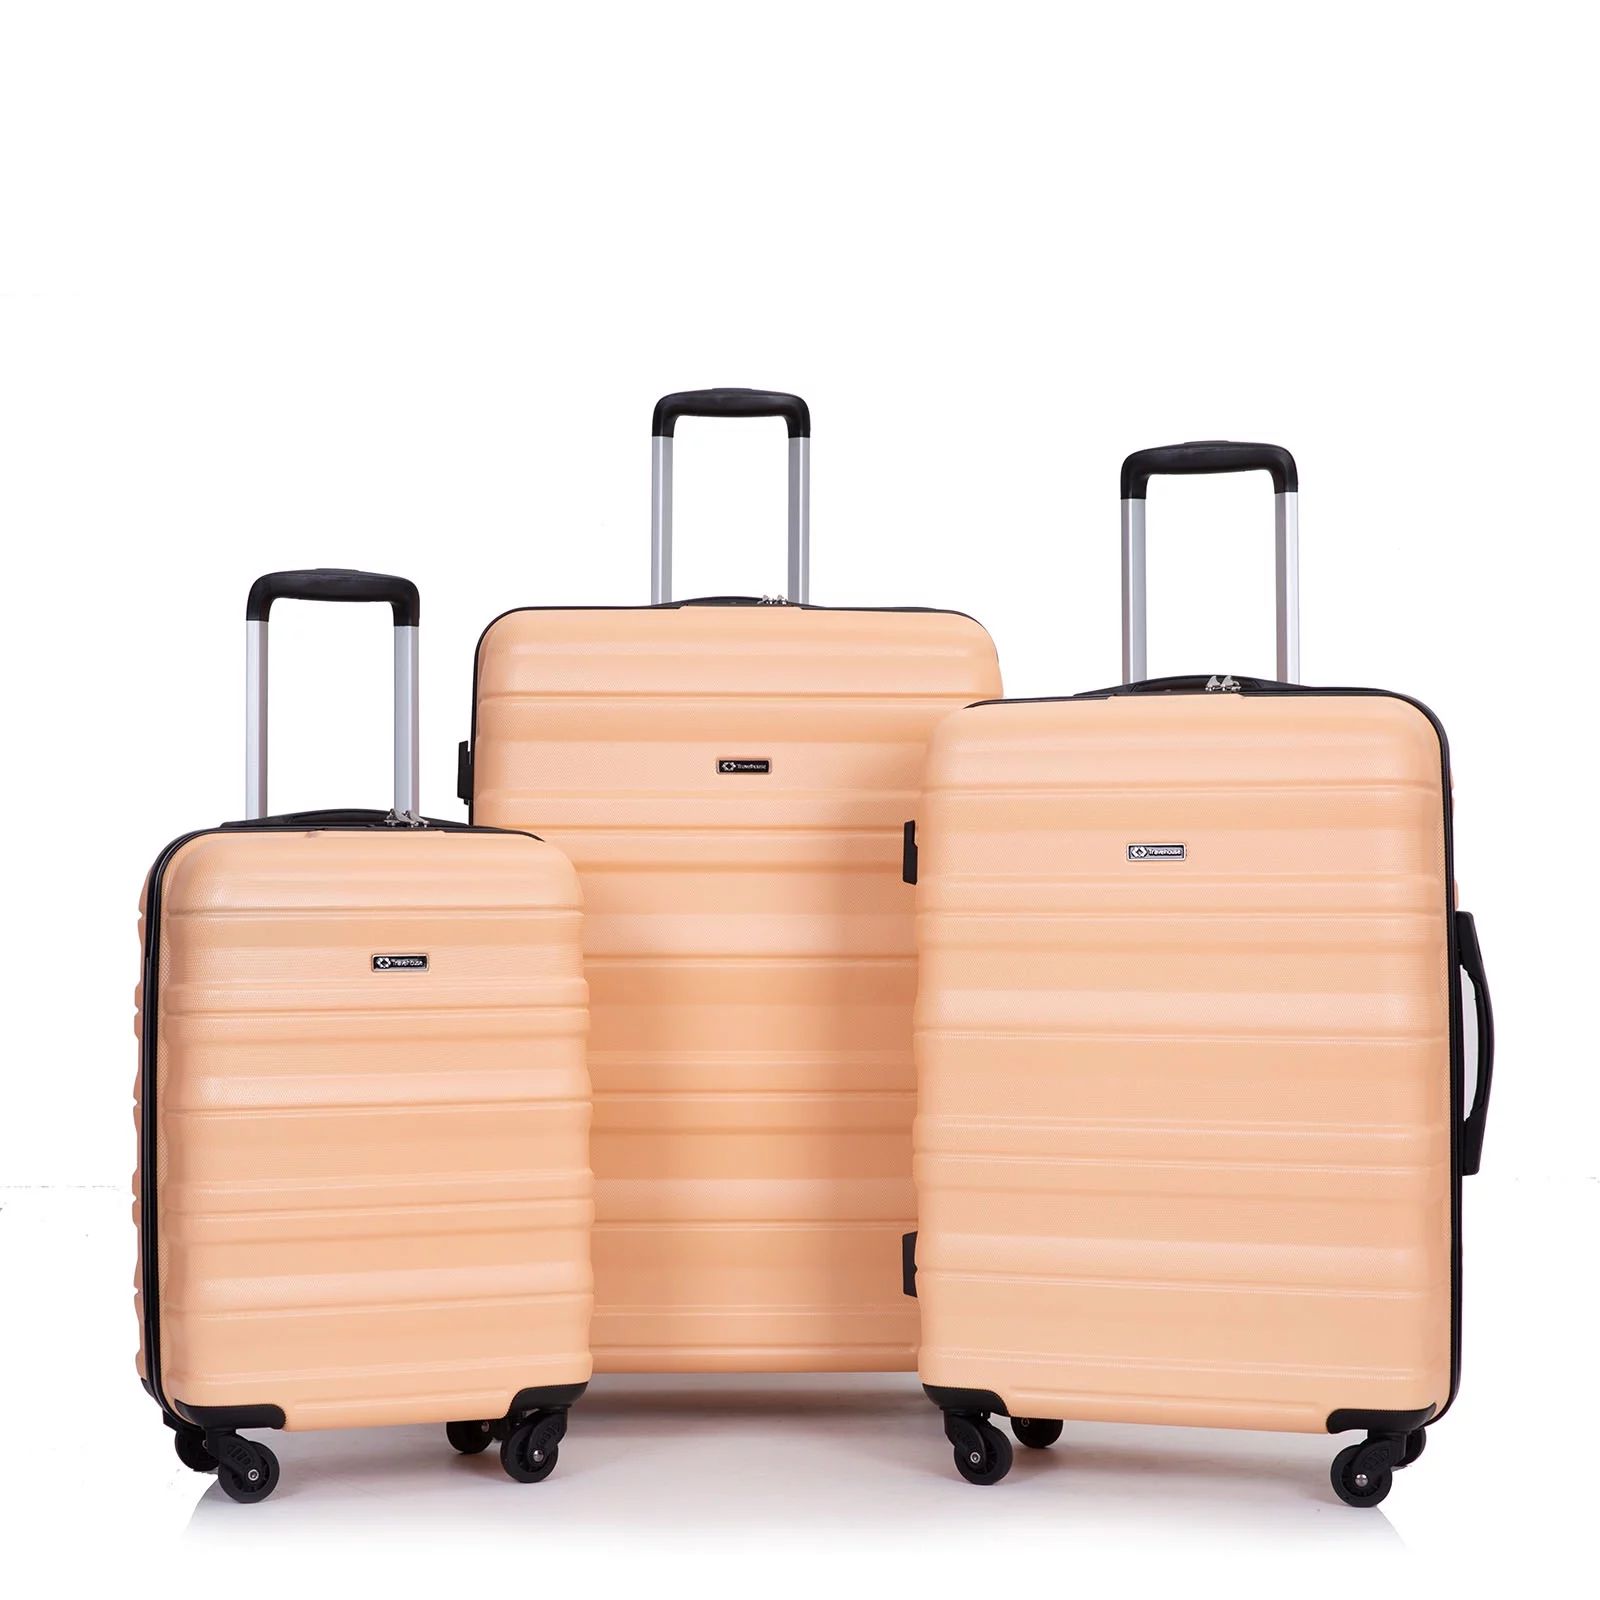 Tripcomp Hardshell Luggage Set 3-Piece Set(21/25/29) Lightweight Suitcase 4-Wheeled Travel Case(P... | Walmart (US)